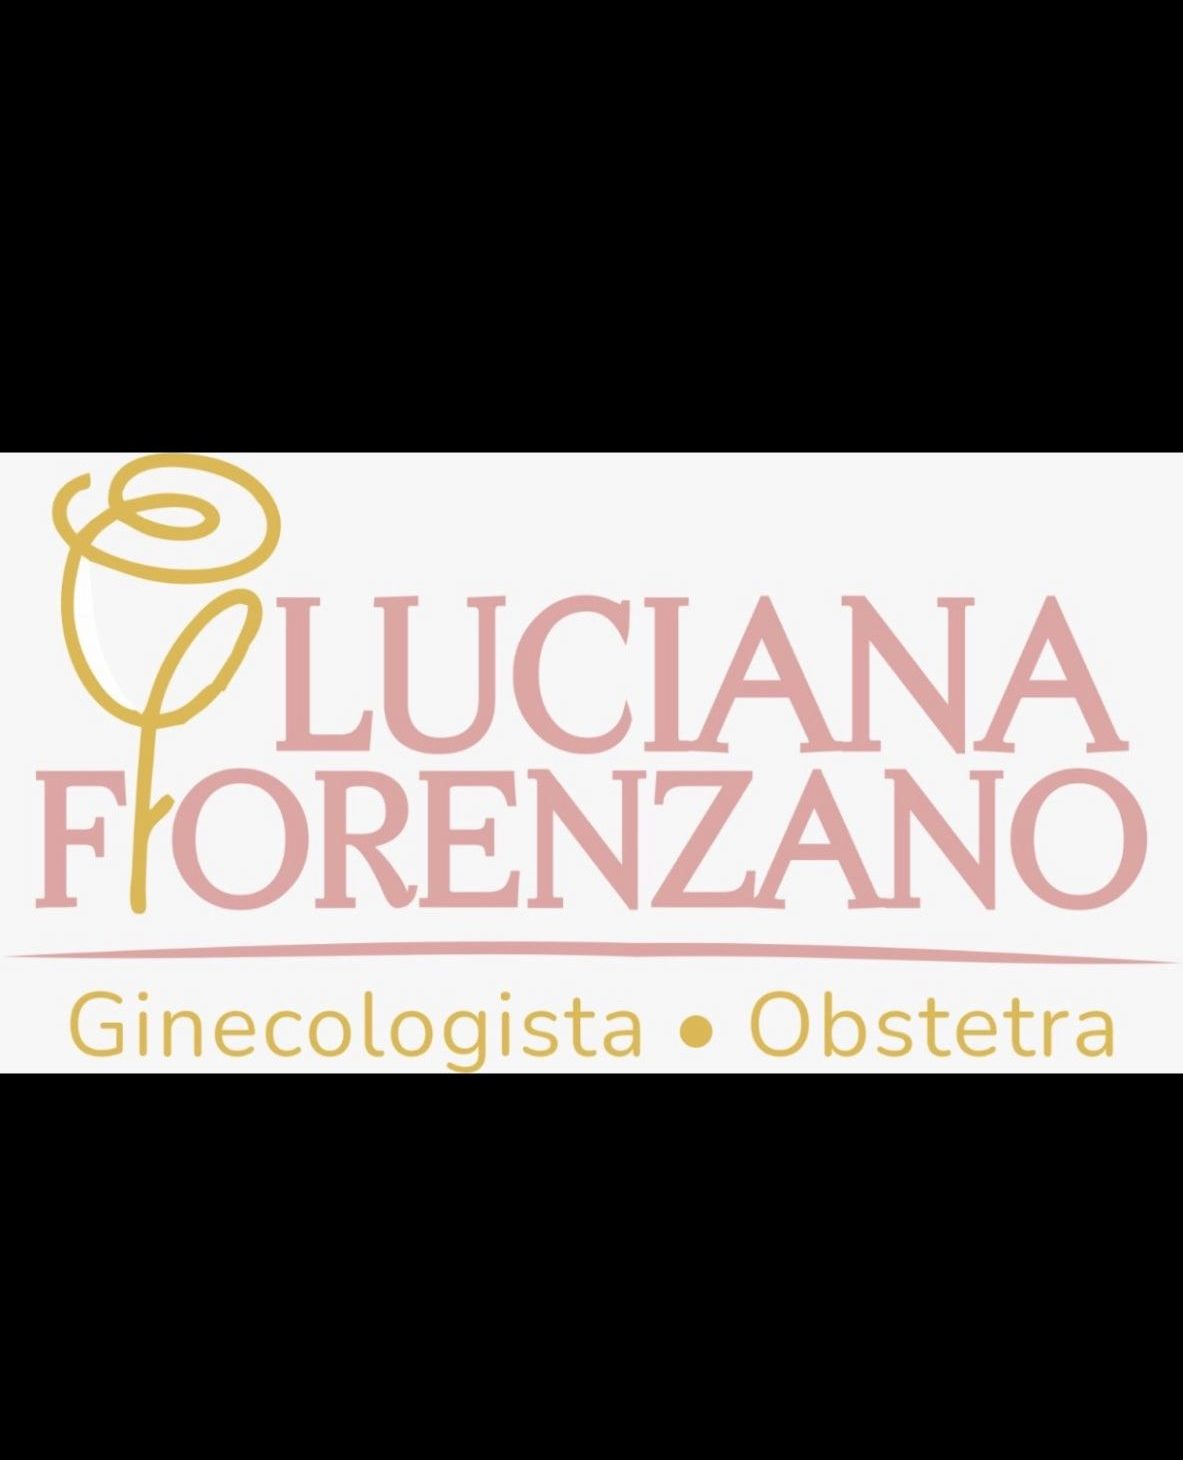 Dra. Luciana Miranda Florenzano